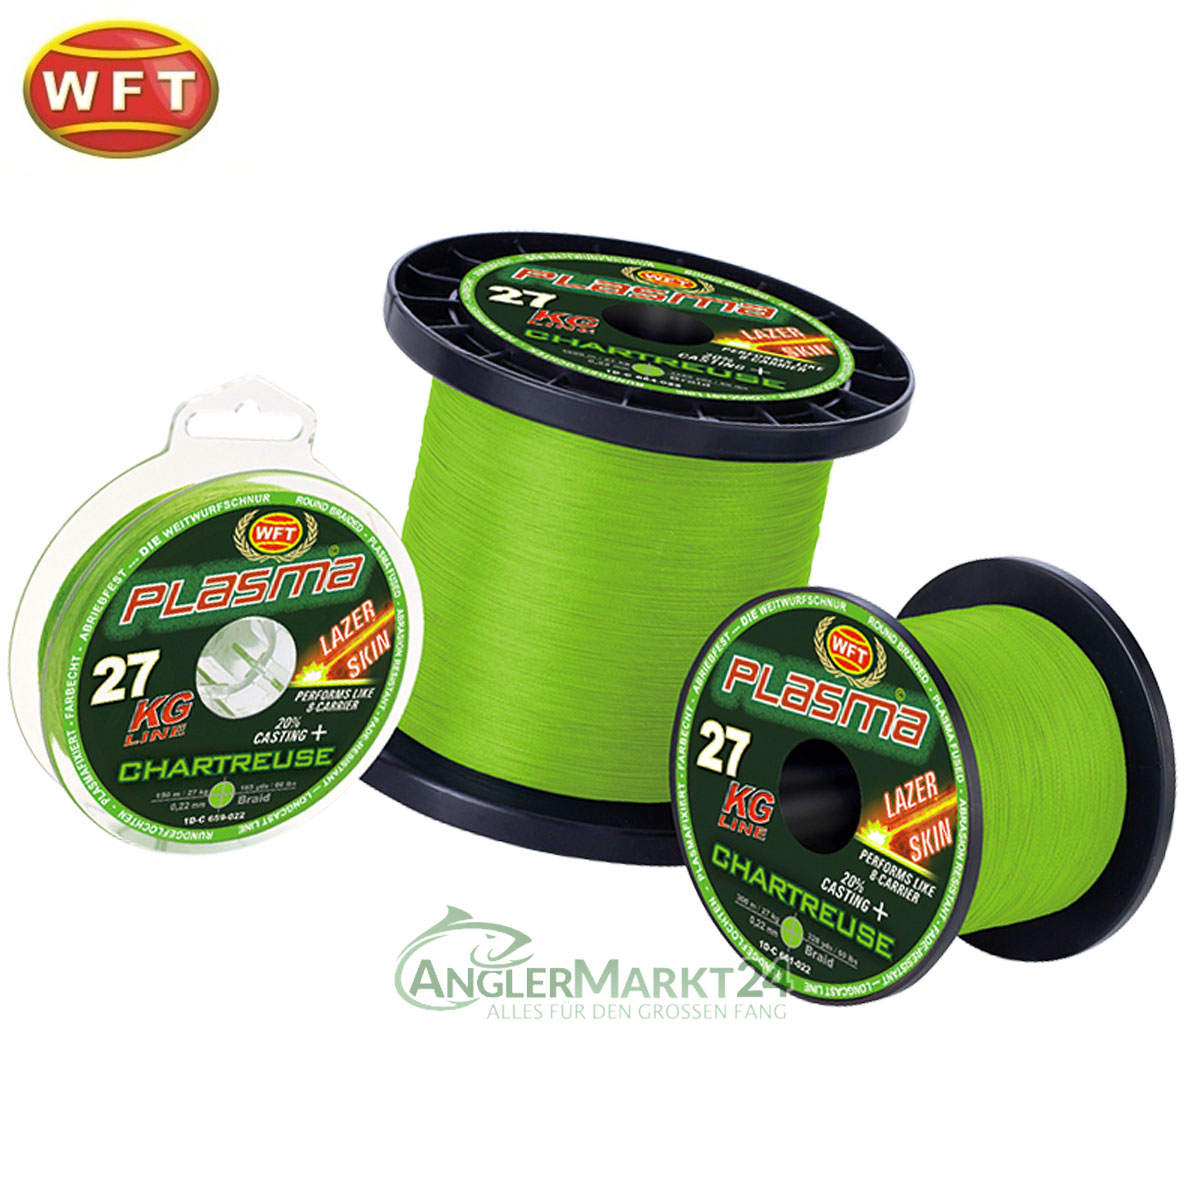 0,15€/m WFT Plasma Green rund geflochtene Angelschnur 150m Farbecht Grün 